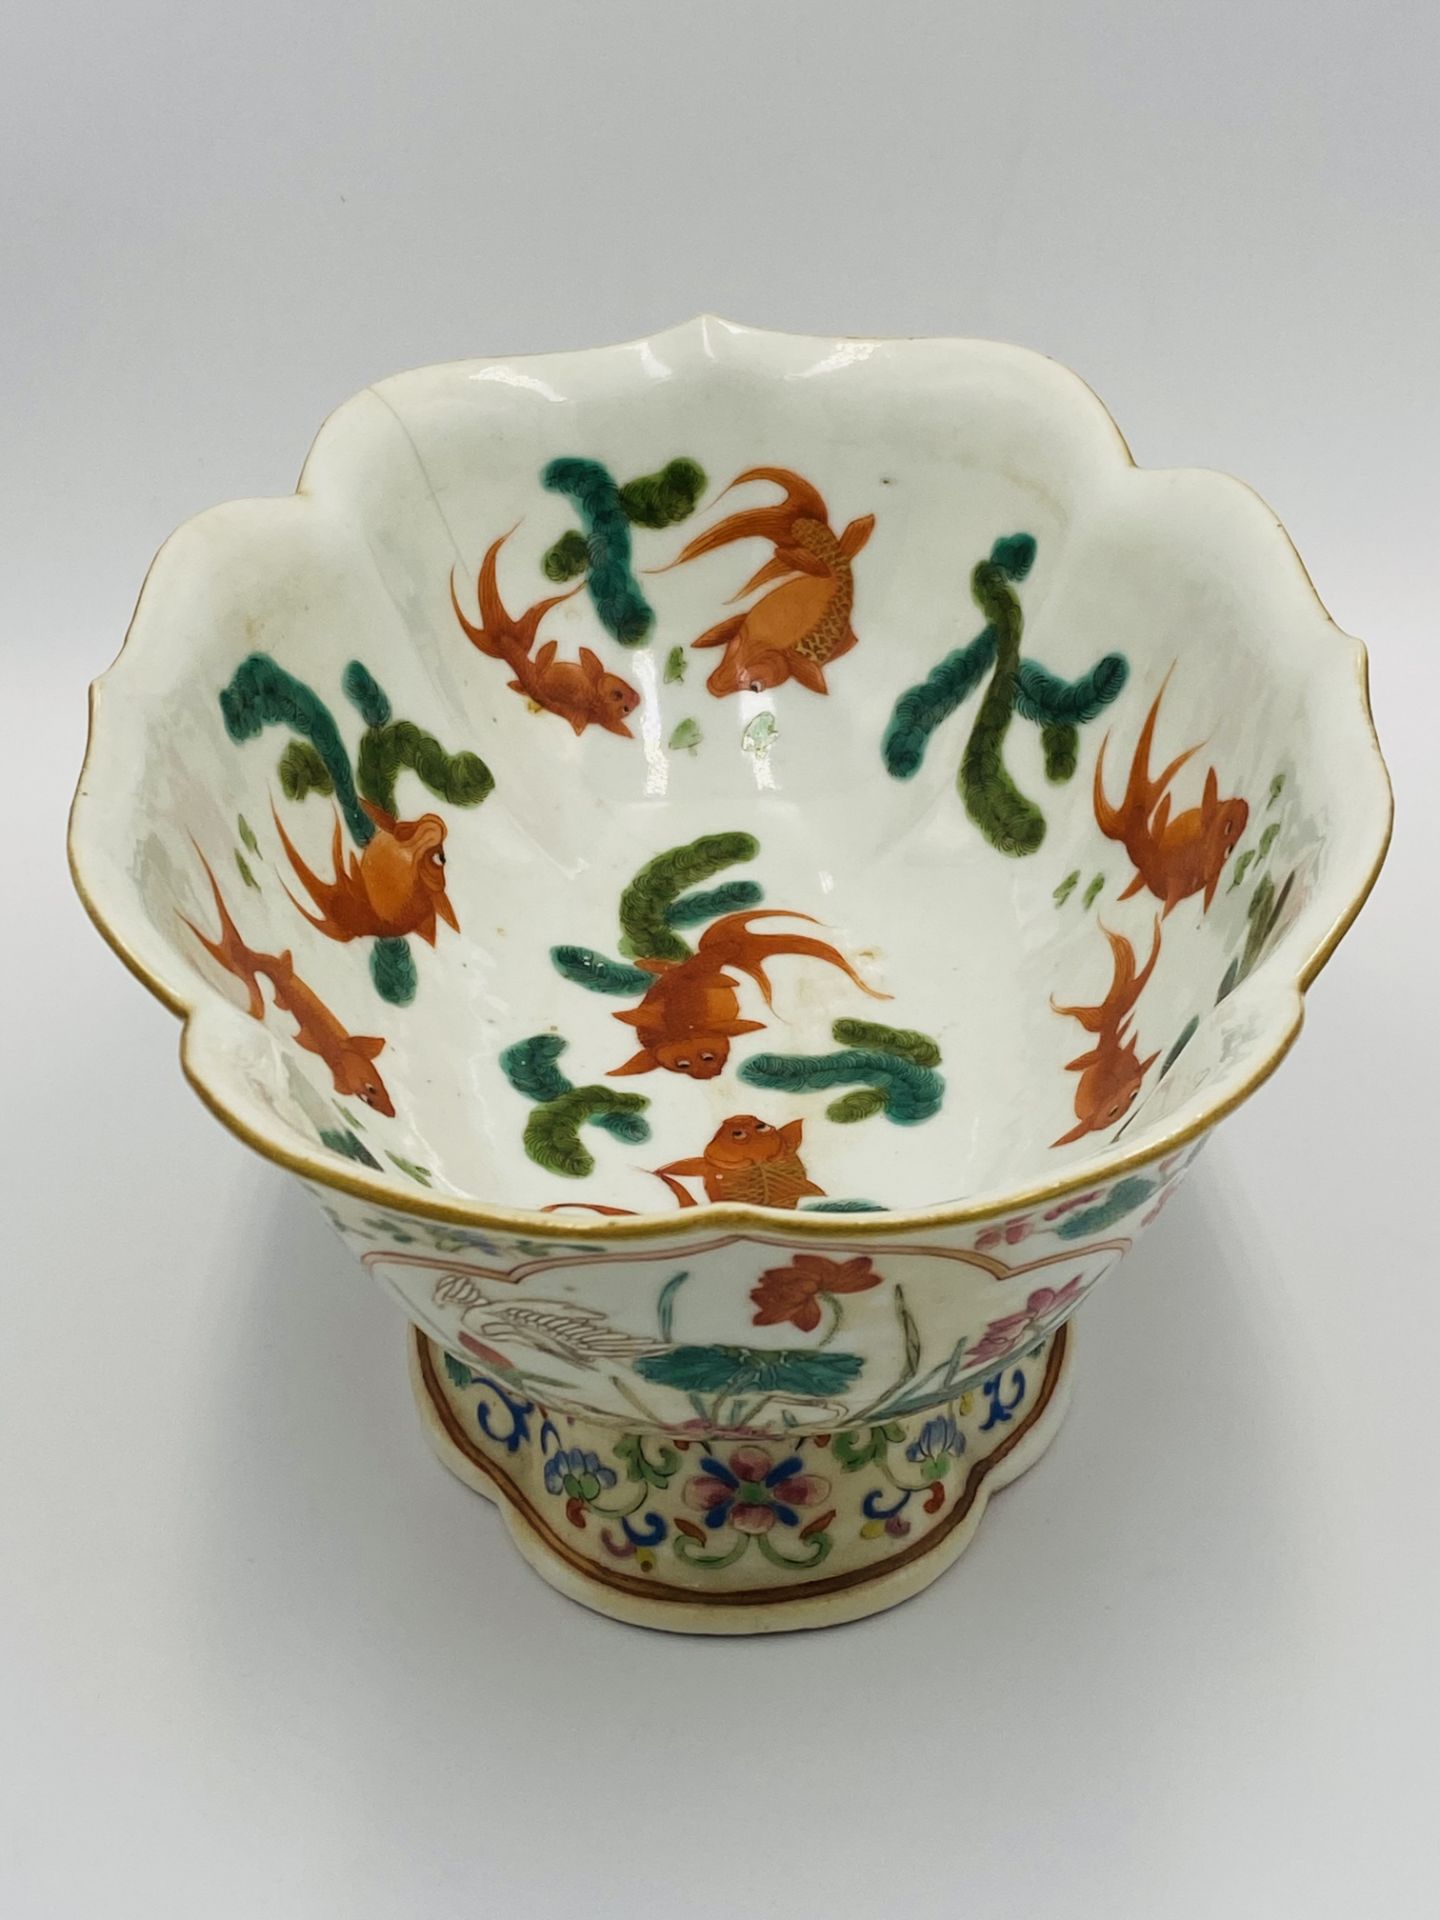 Chinese famille verte goldfish bowl - Image 5 of 7